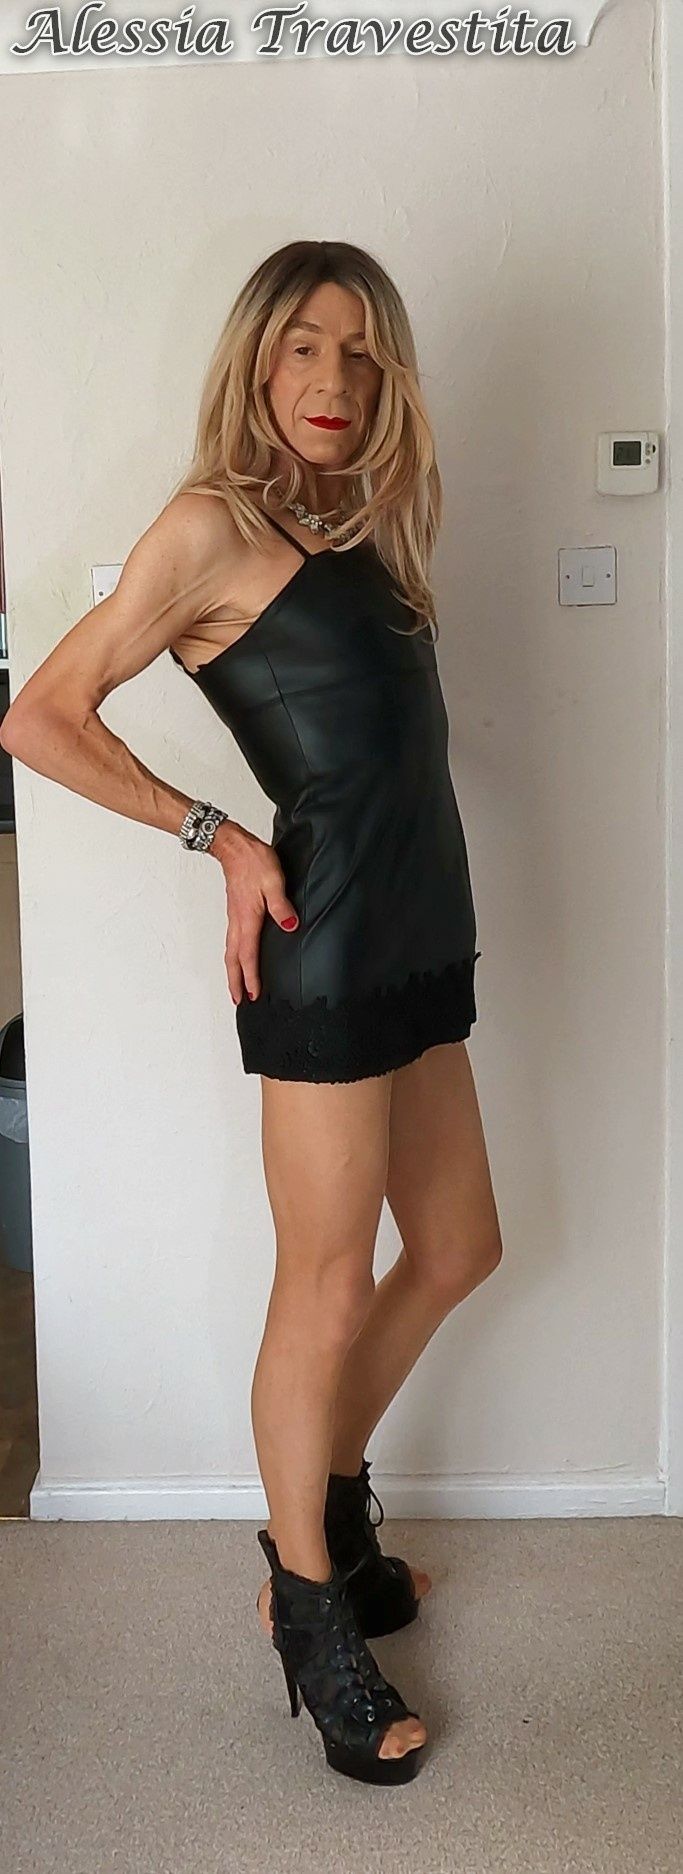 79 Alessia Travestita in Black Leather Dress #14